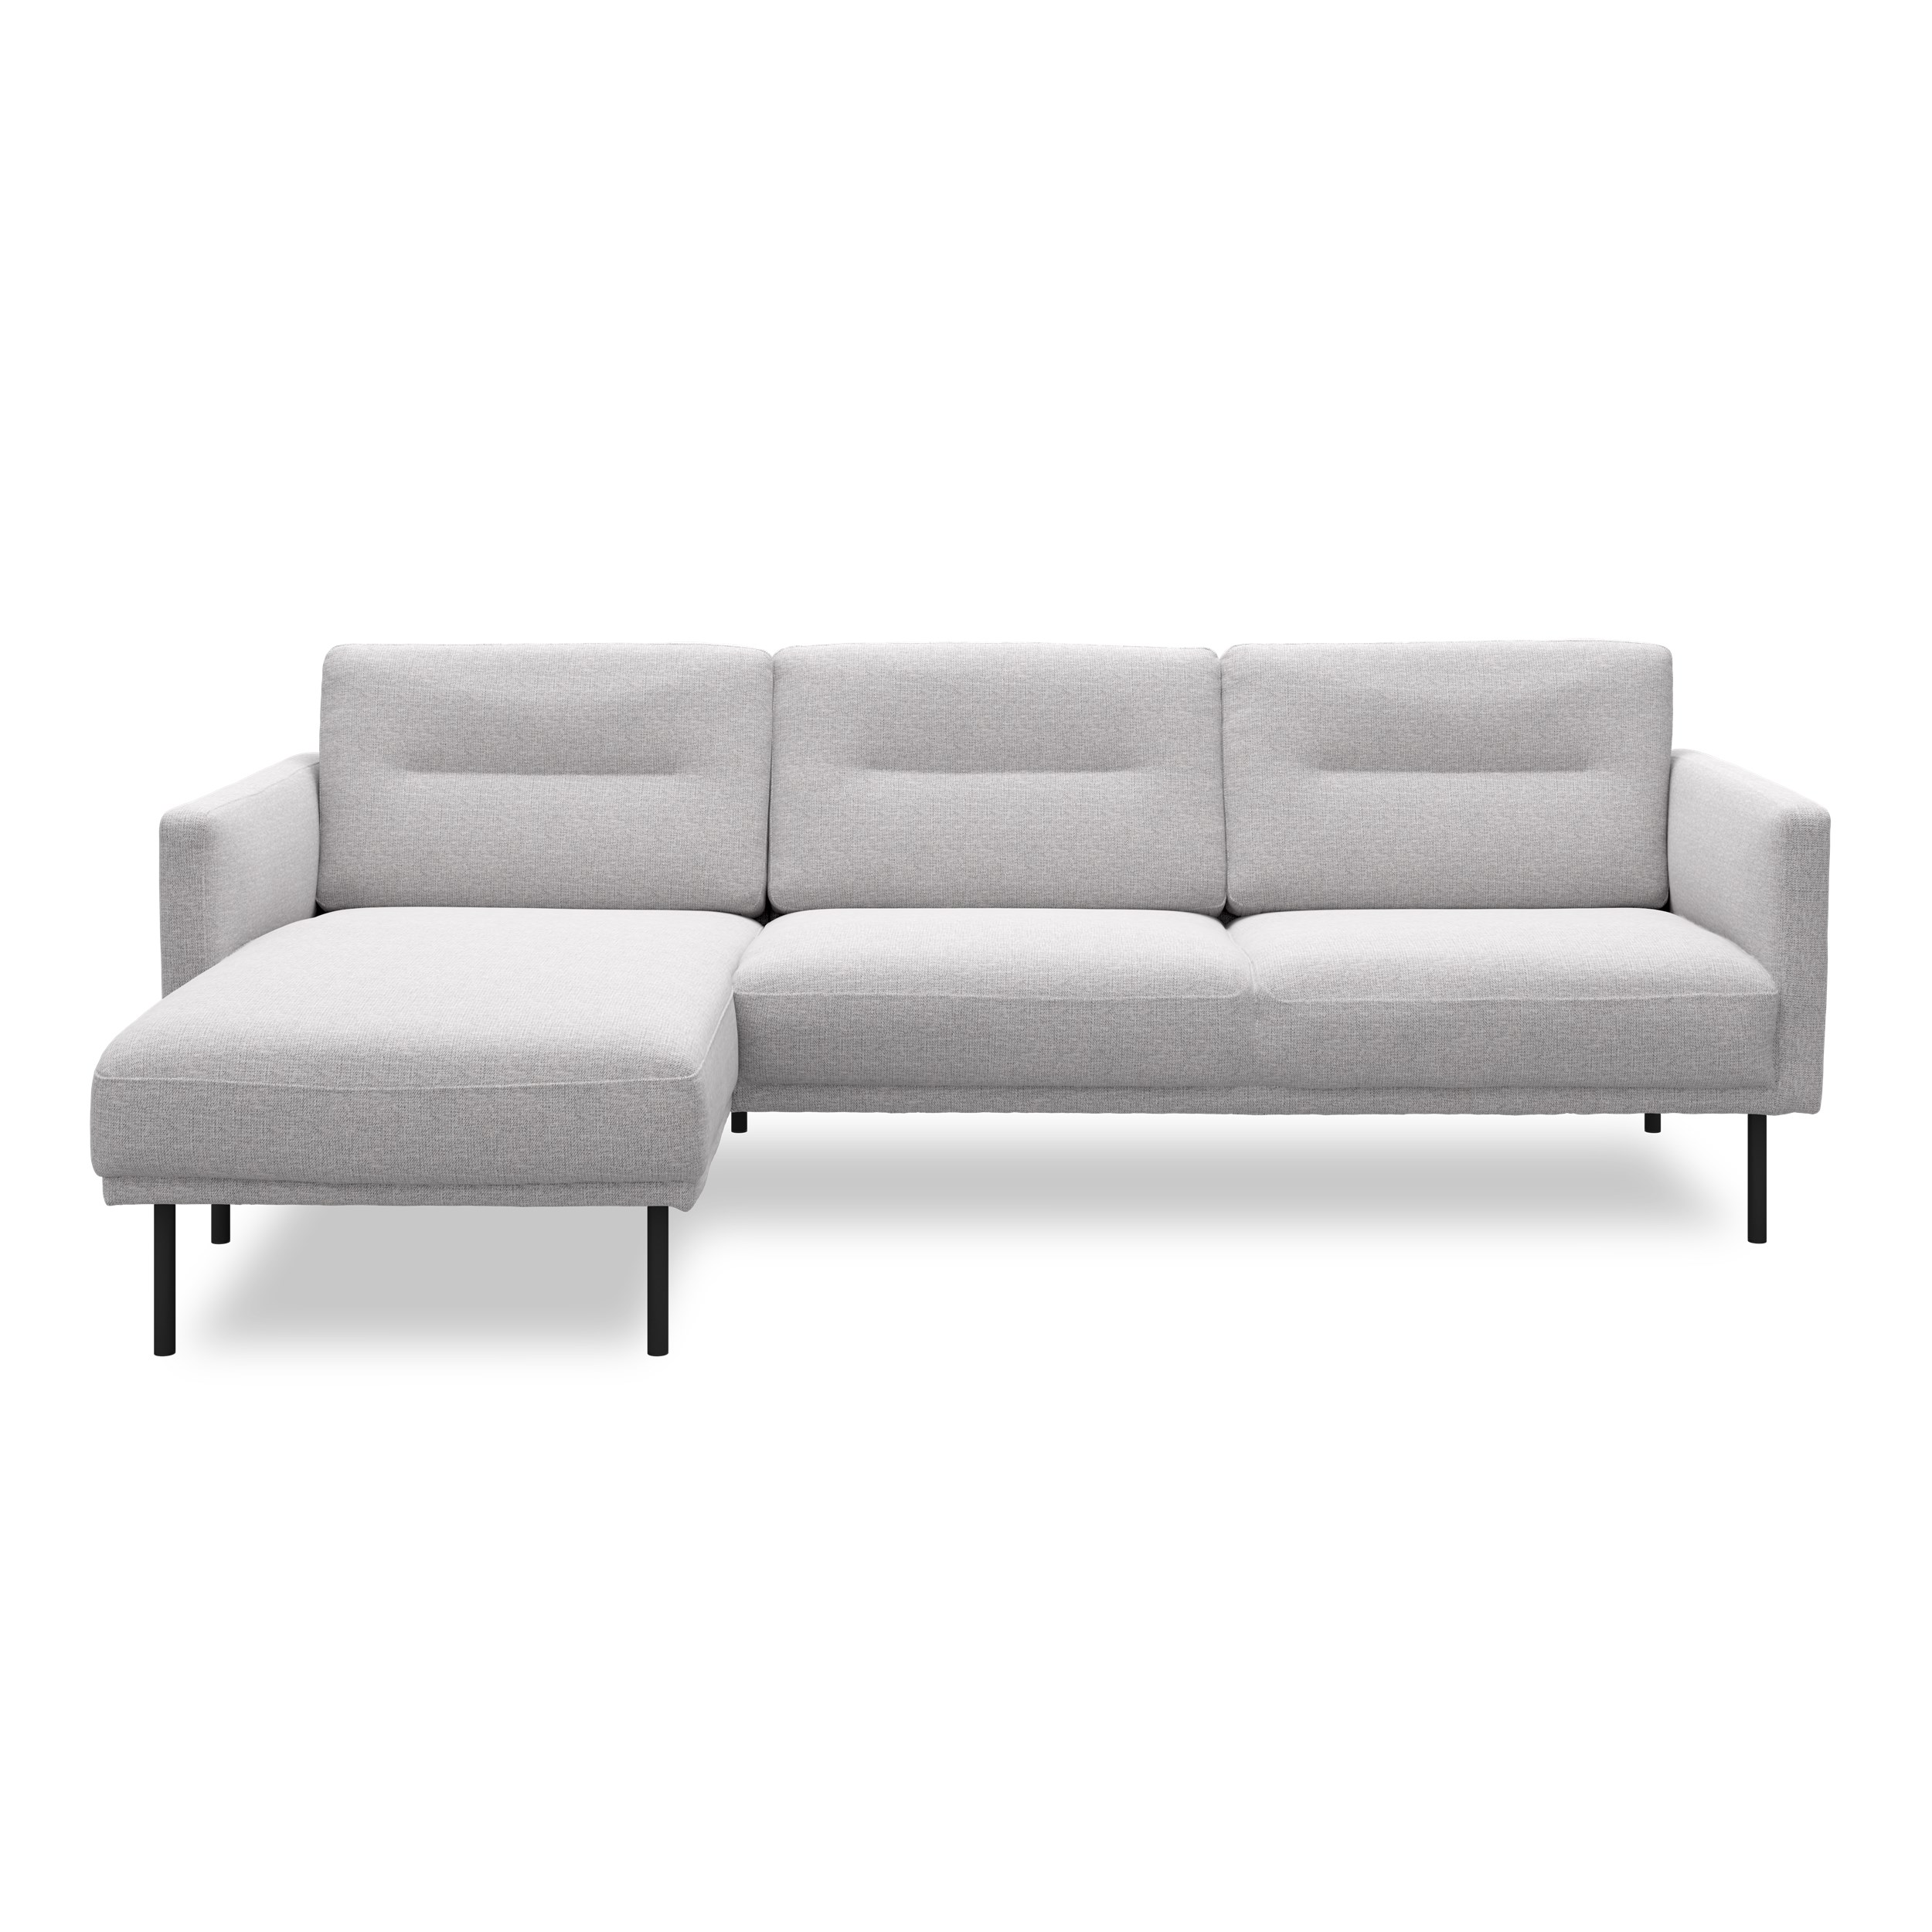 Larvik venstrevendt sofa med chaiselong - Hampton 372 Light grey stof og ben i sortlakeret metal